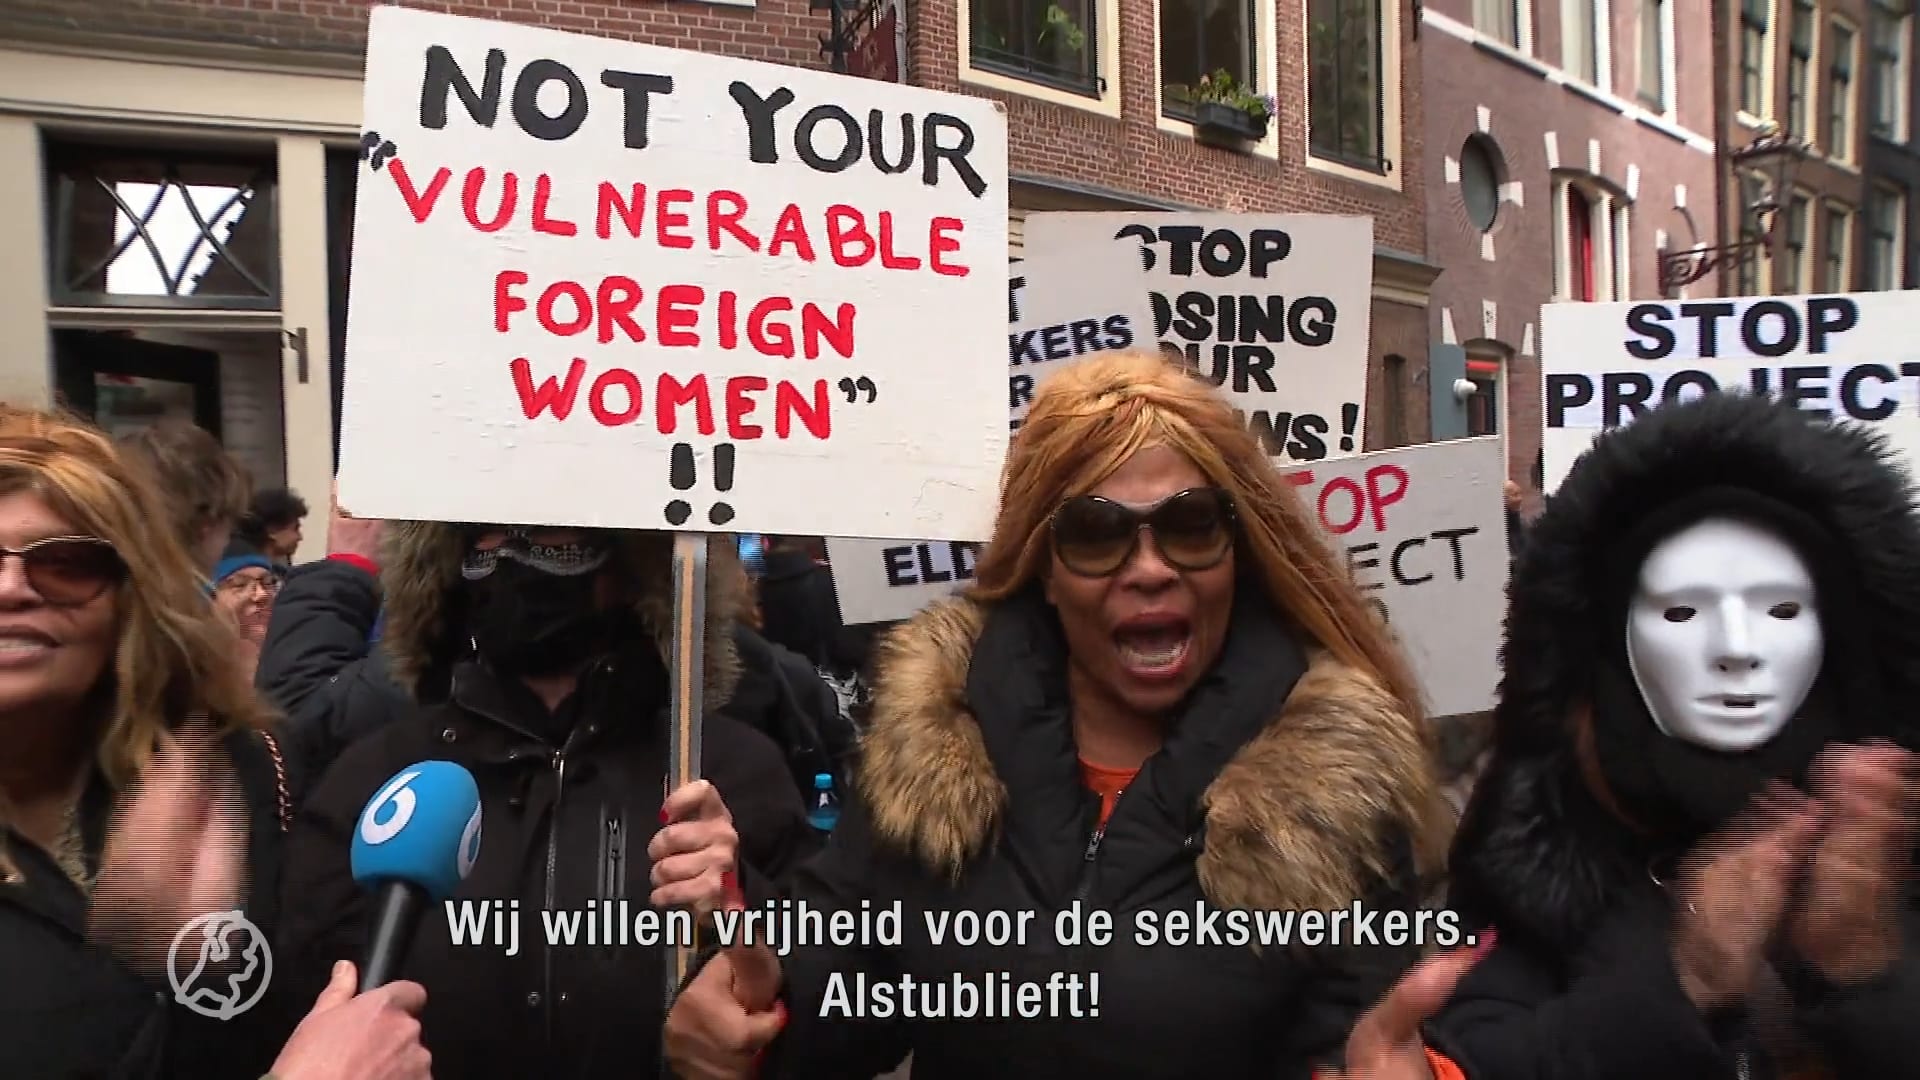 Amsterdamse sekswerkers zijn onzekerheid zat: 'Lijken net aapjes in een kooi'